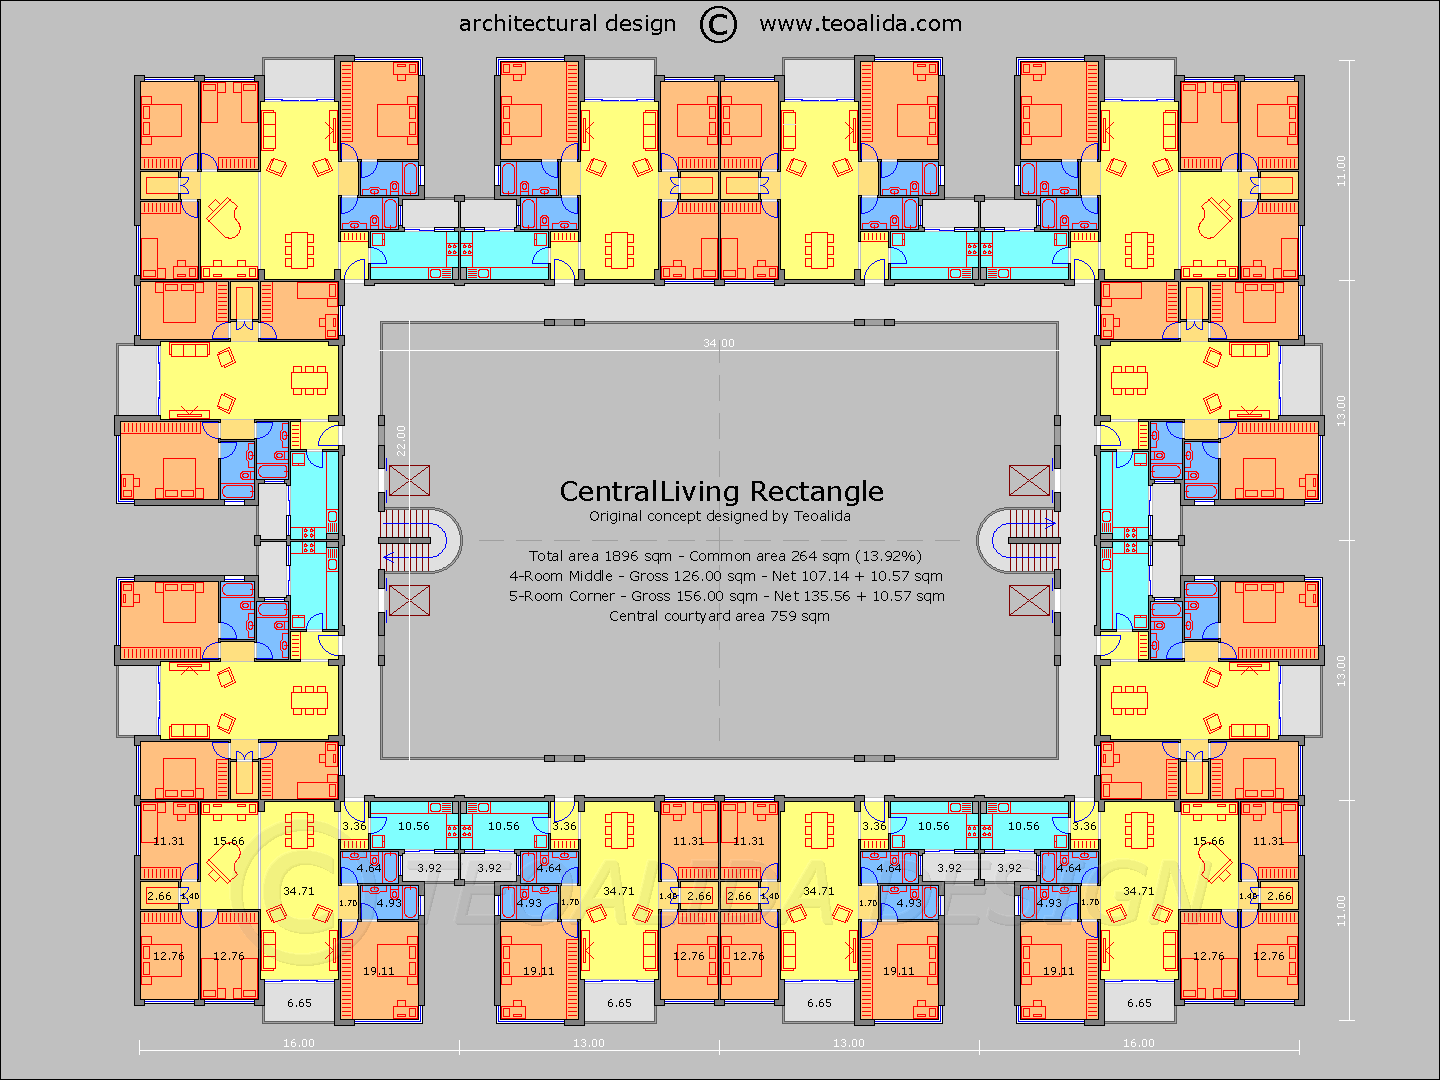 CentralLiving Rectangle floor plan